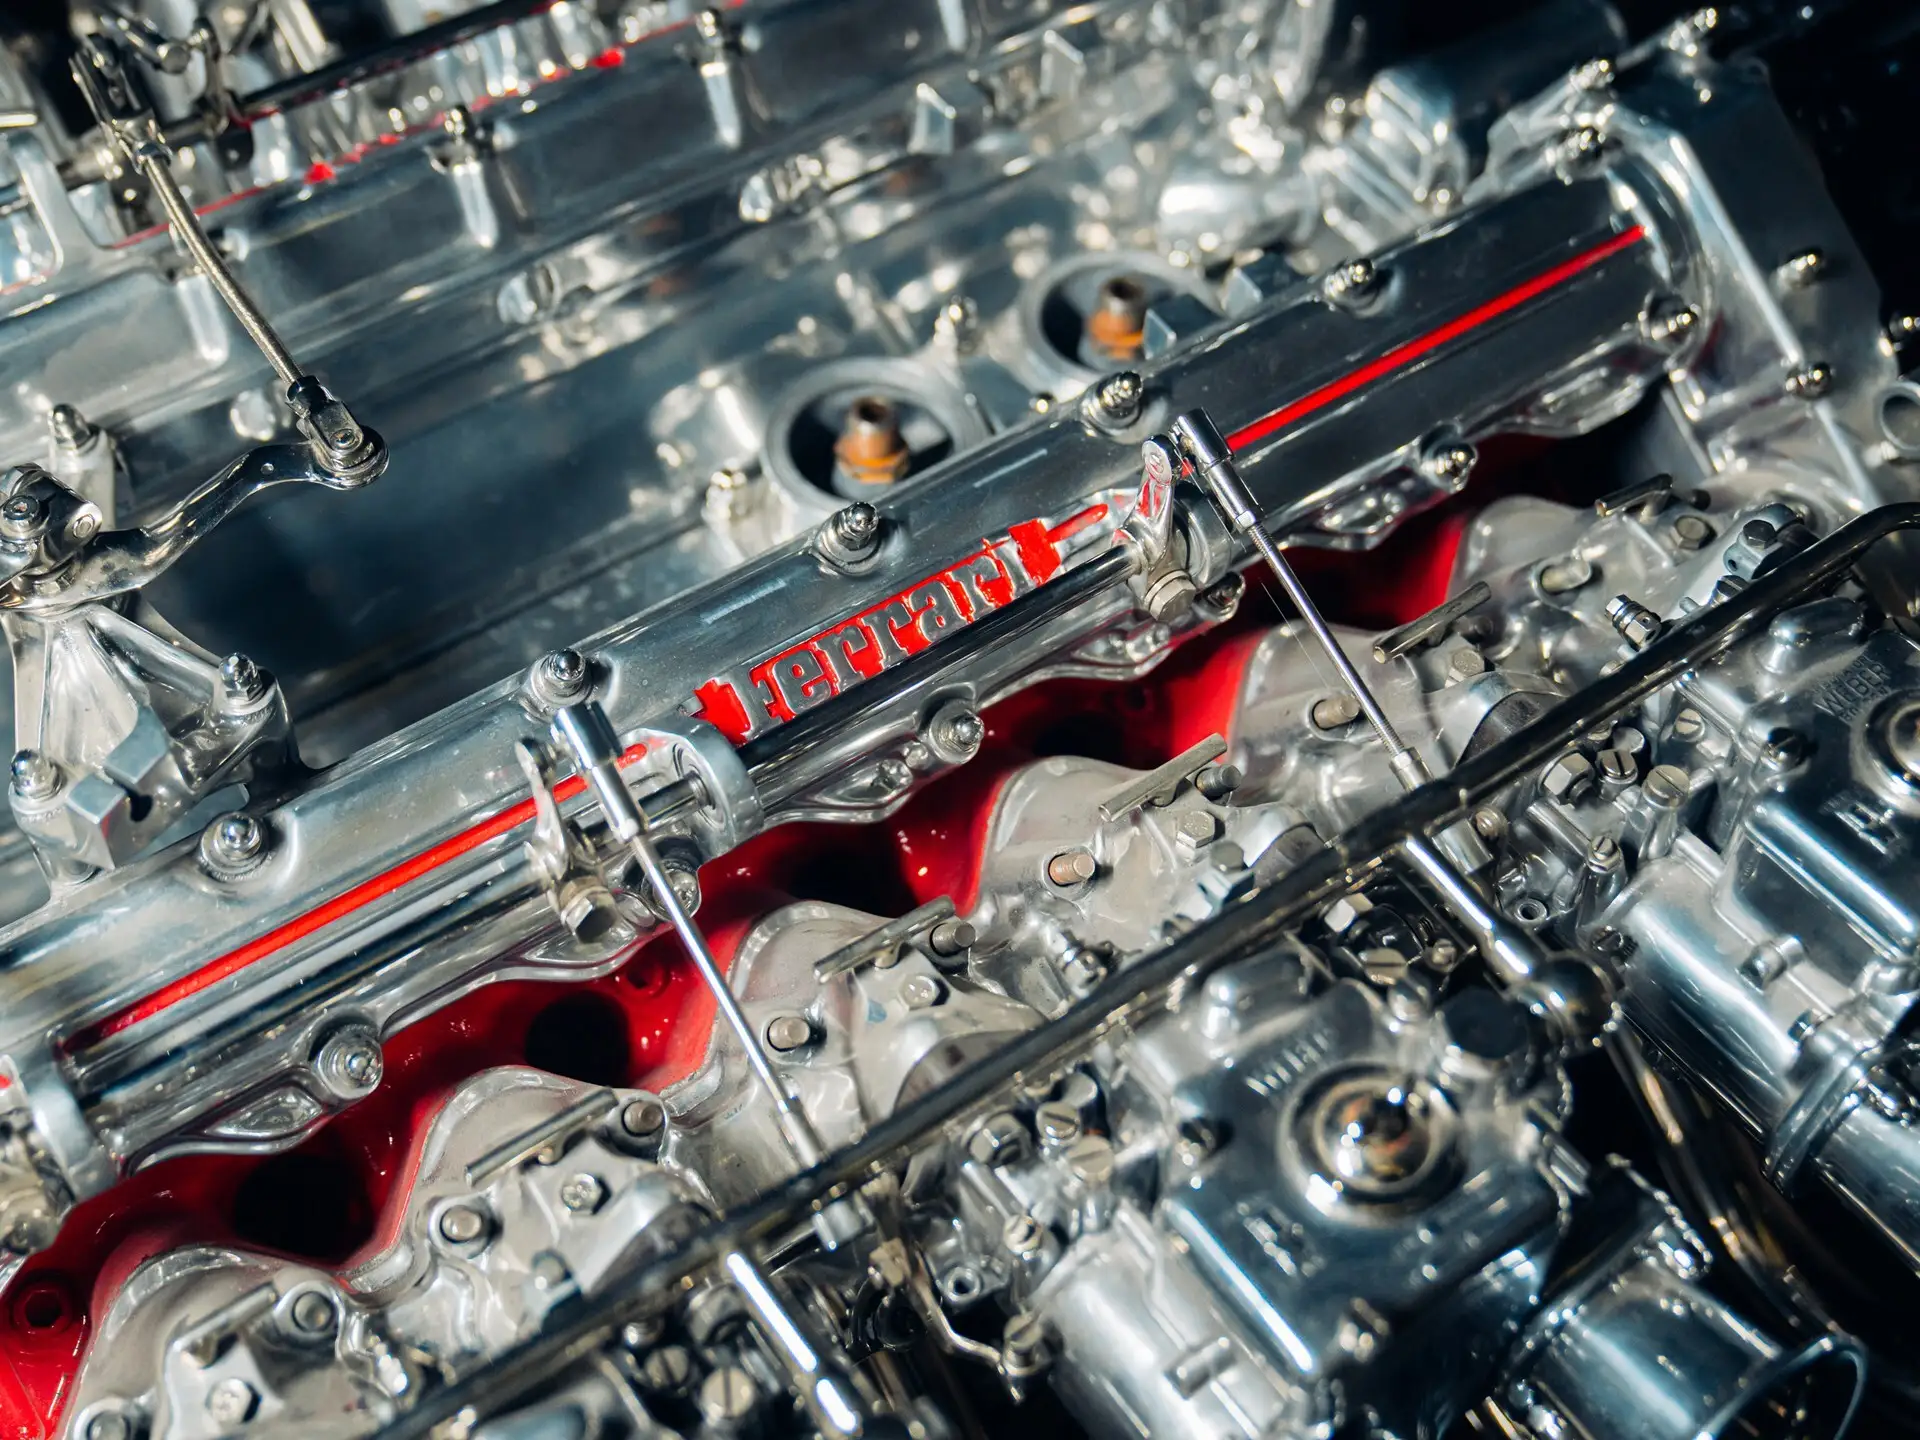 Ferrari V12 engine table